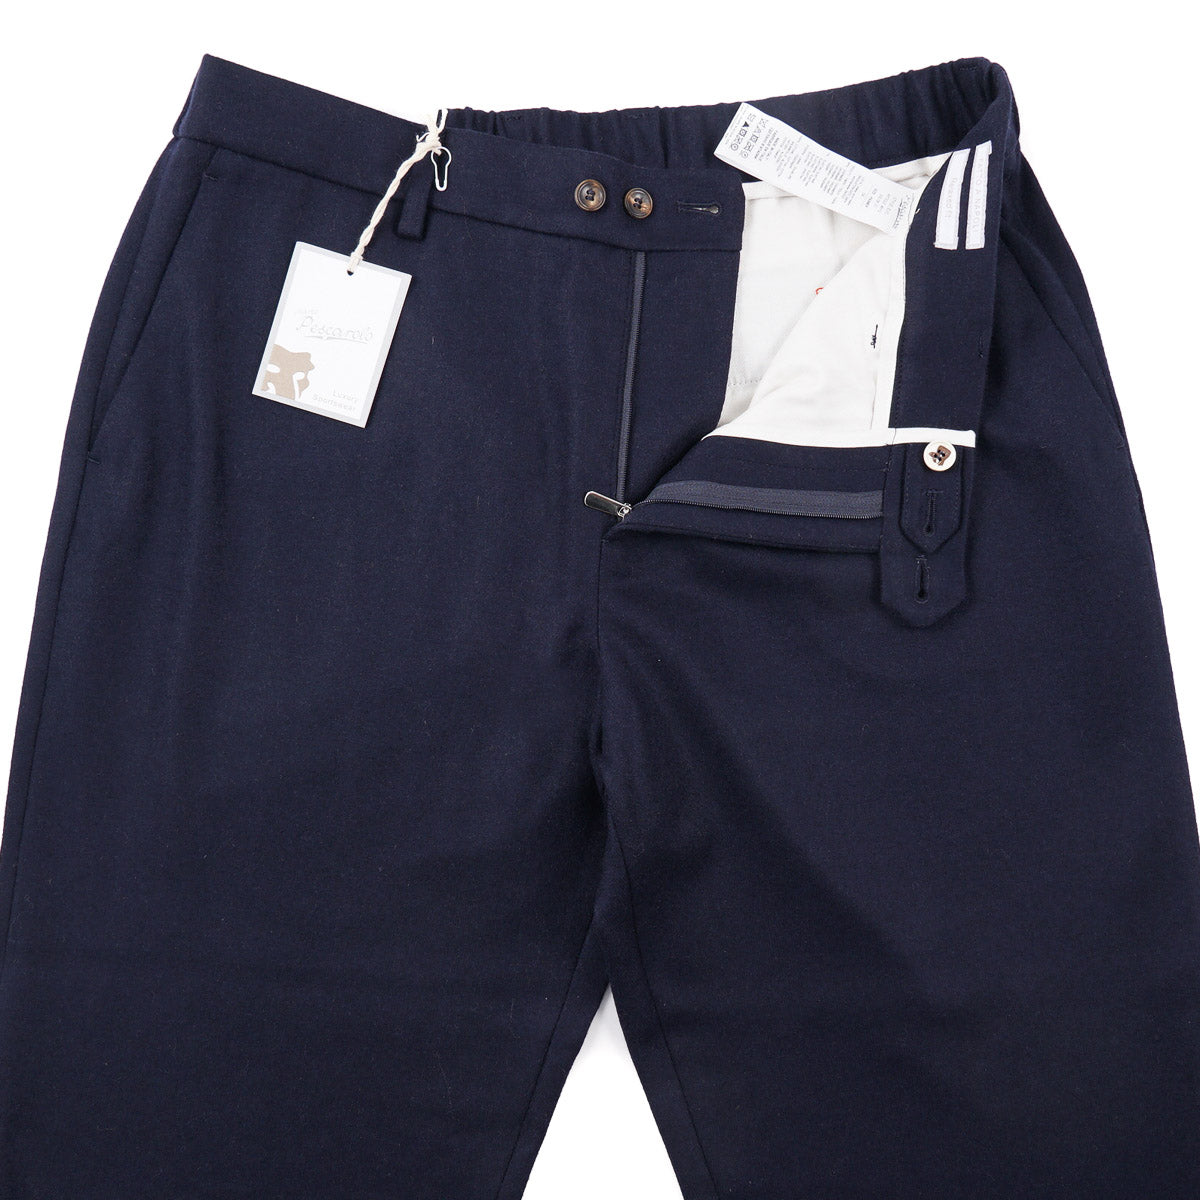 Marco Pescarolo Hybrid Jersey Cashmere Pants - Top Shelf Apparel